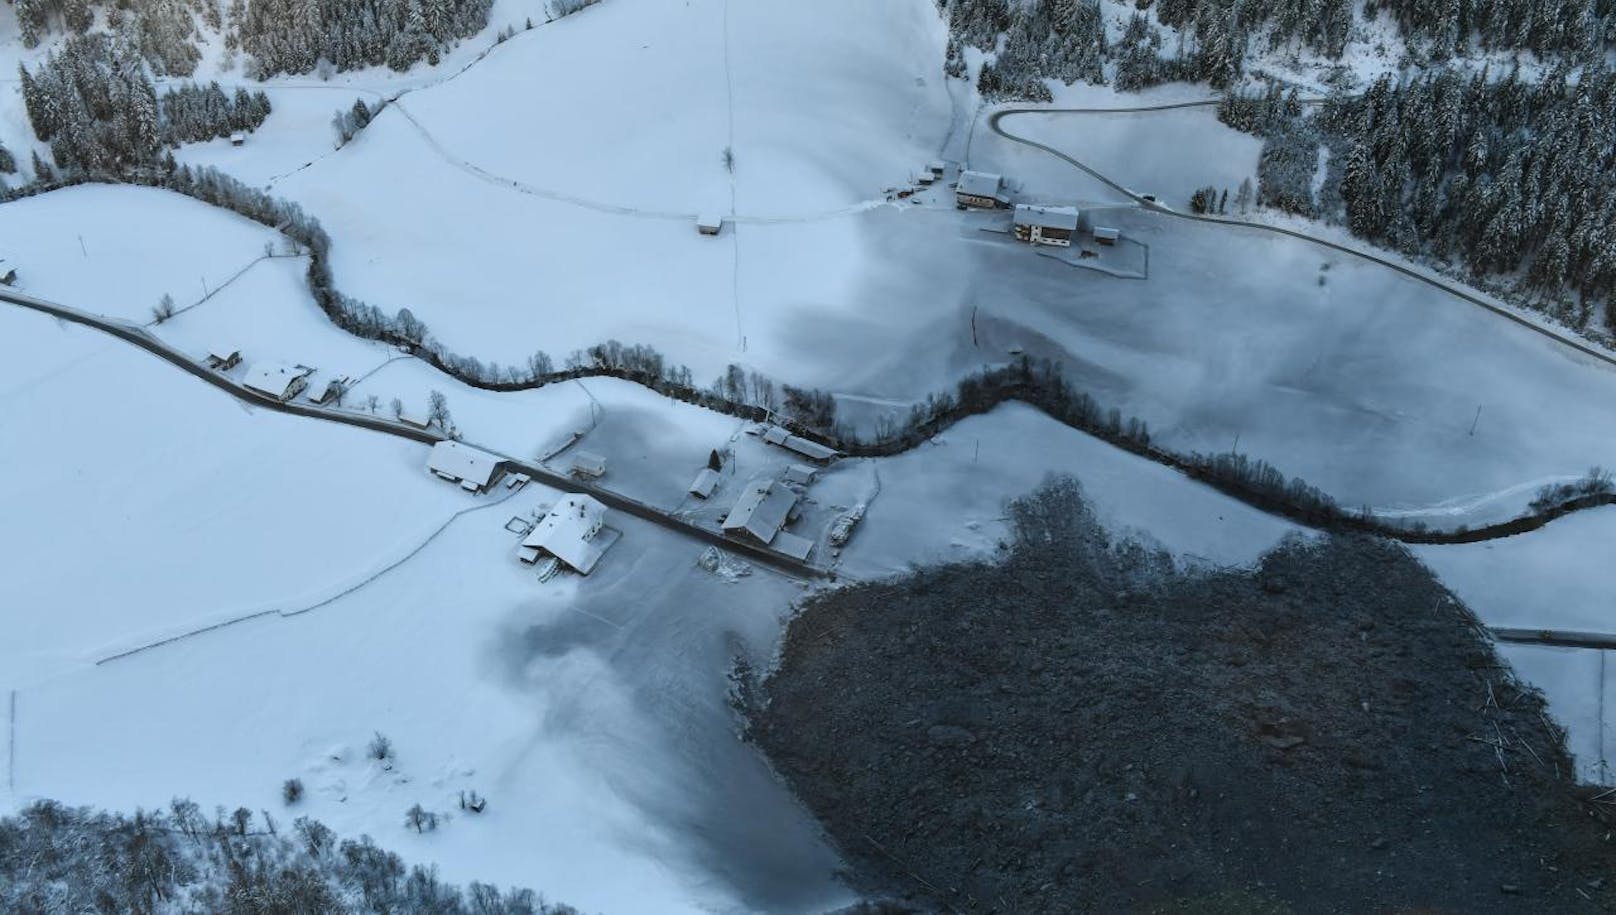 Die Bewohner der Tiroler Gemeinde Vals im Valsertal nahe dem Brenner haben am Heiligen Abend 2017 ein wahres Weihnachtswunder erlebt. <b>Mehr Infos: </b> <a href="https://www.heute.at/oesterreich/tirol/story/42183828" target="_blank">"Gigantischer Felssturz" donnert an Dorf vorbei</a>